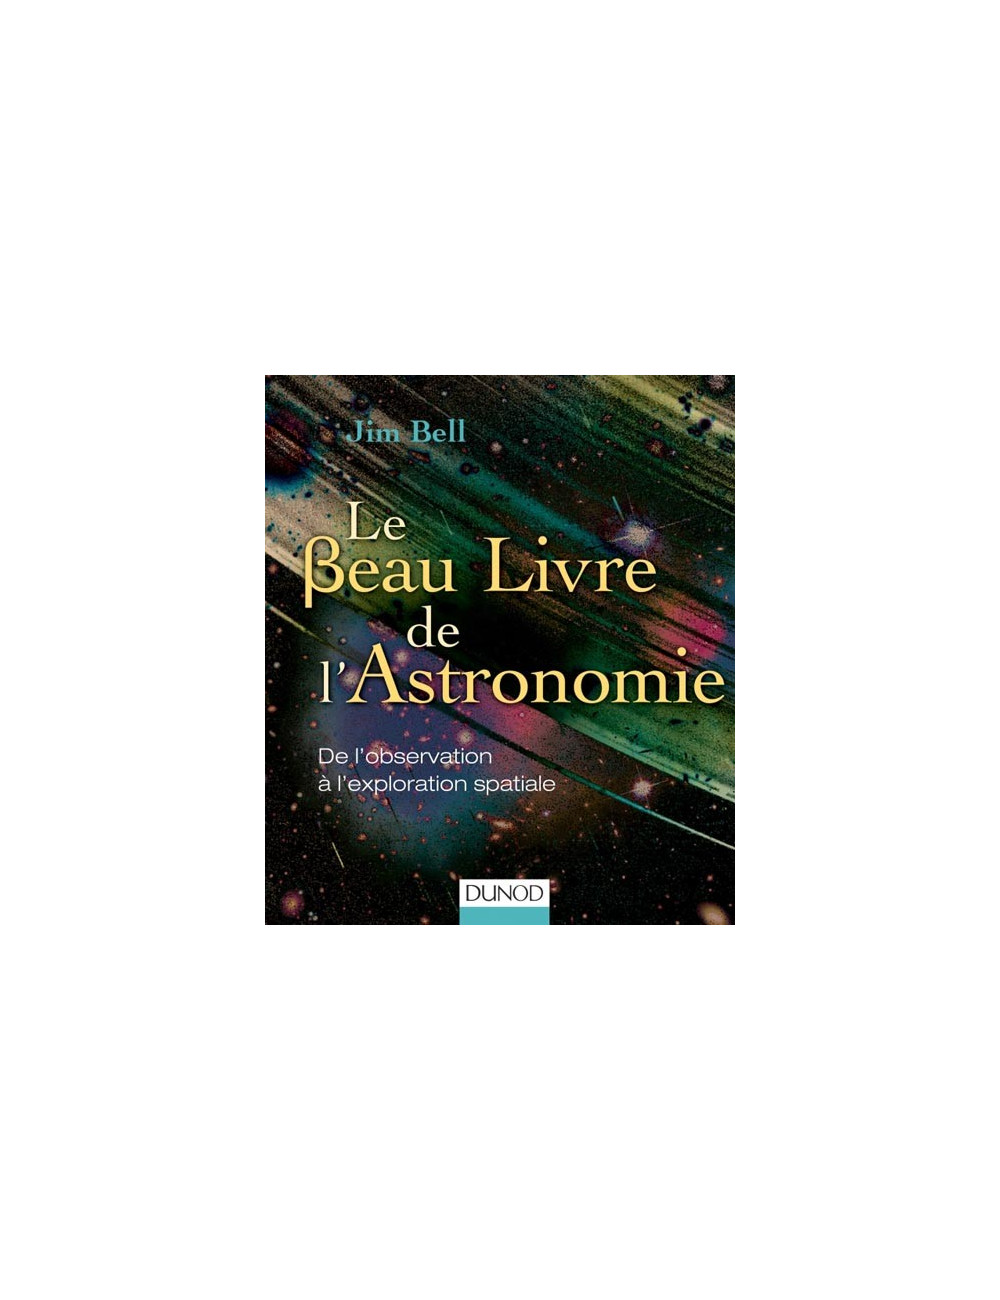 Le beau livre de l'Astronomie